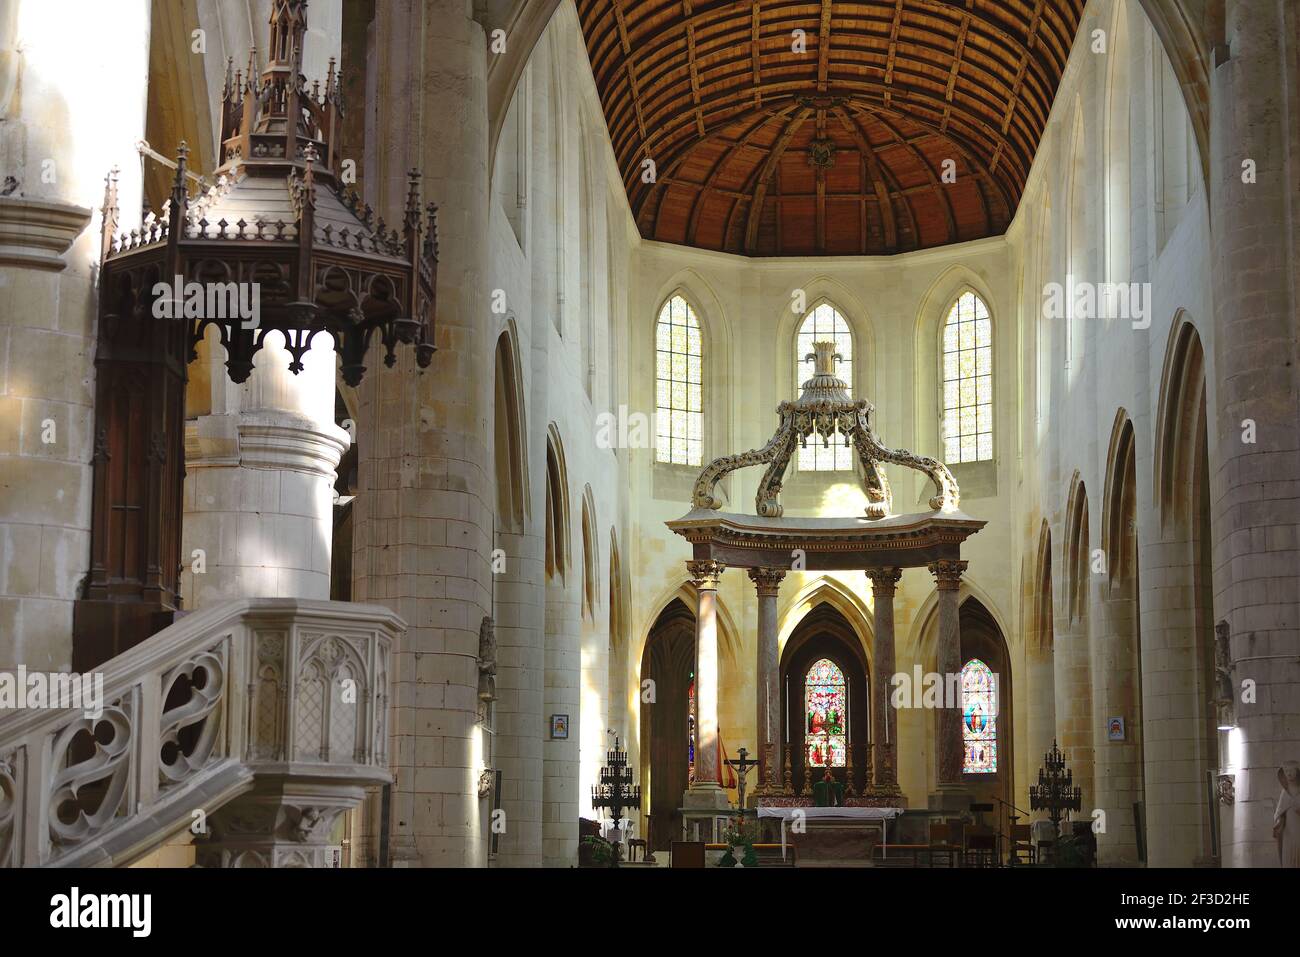 Saintes (centre-ouest de la France) : vue intérieure de la cathédrale Saint-Pierre avec la chaire, le choeur et l'autel à baldaquin Banque D'Images